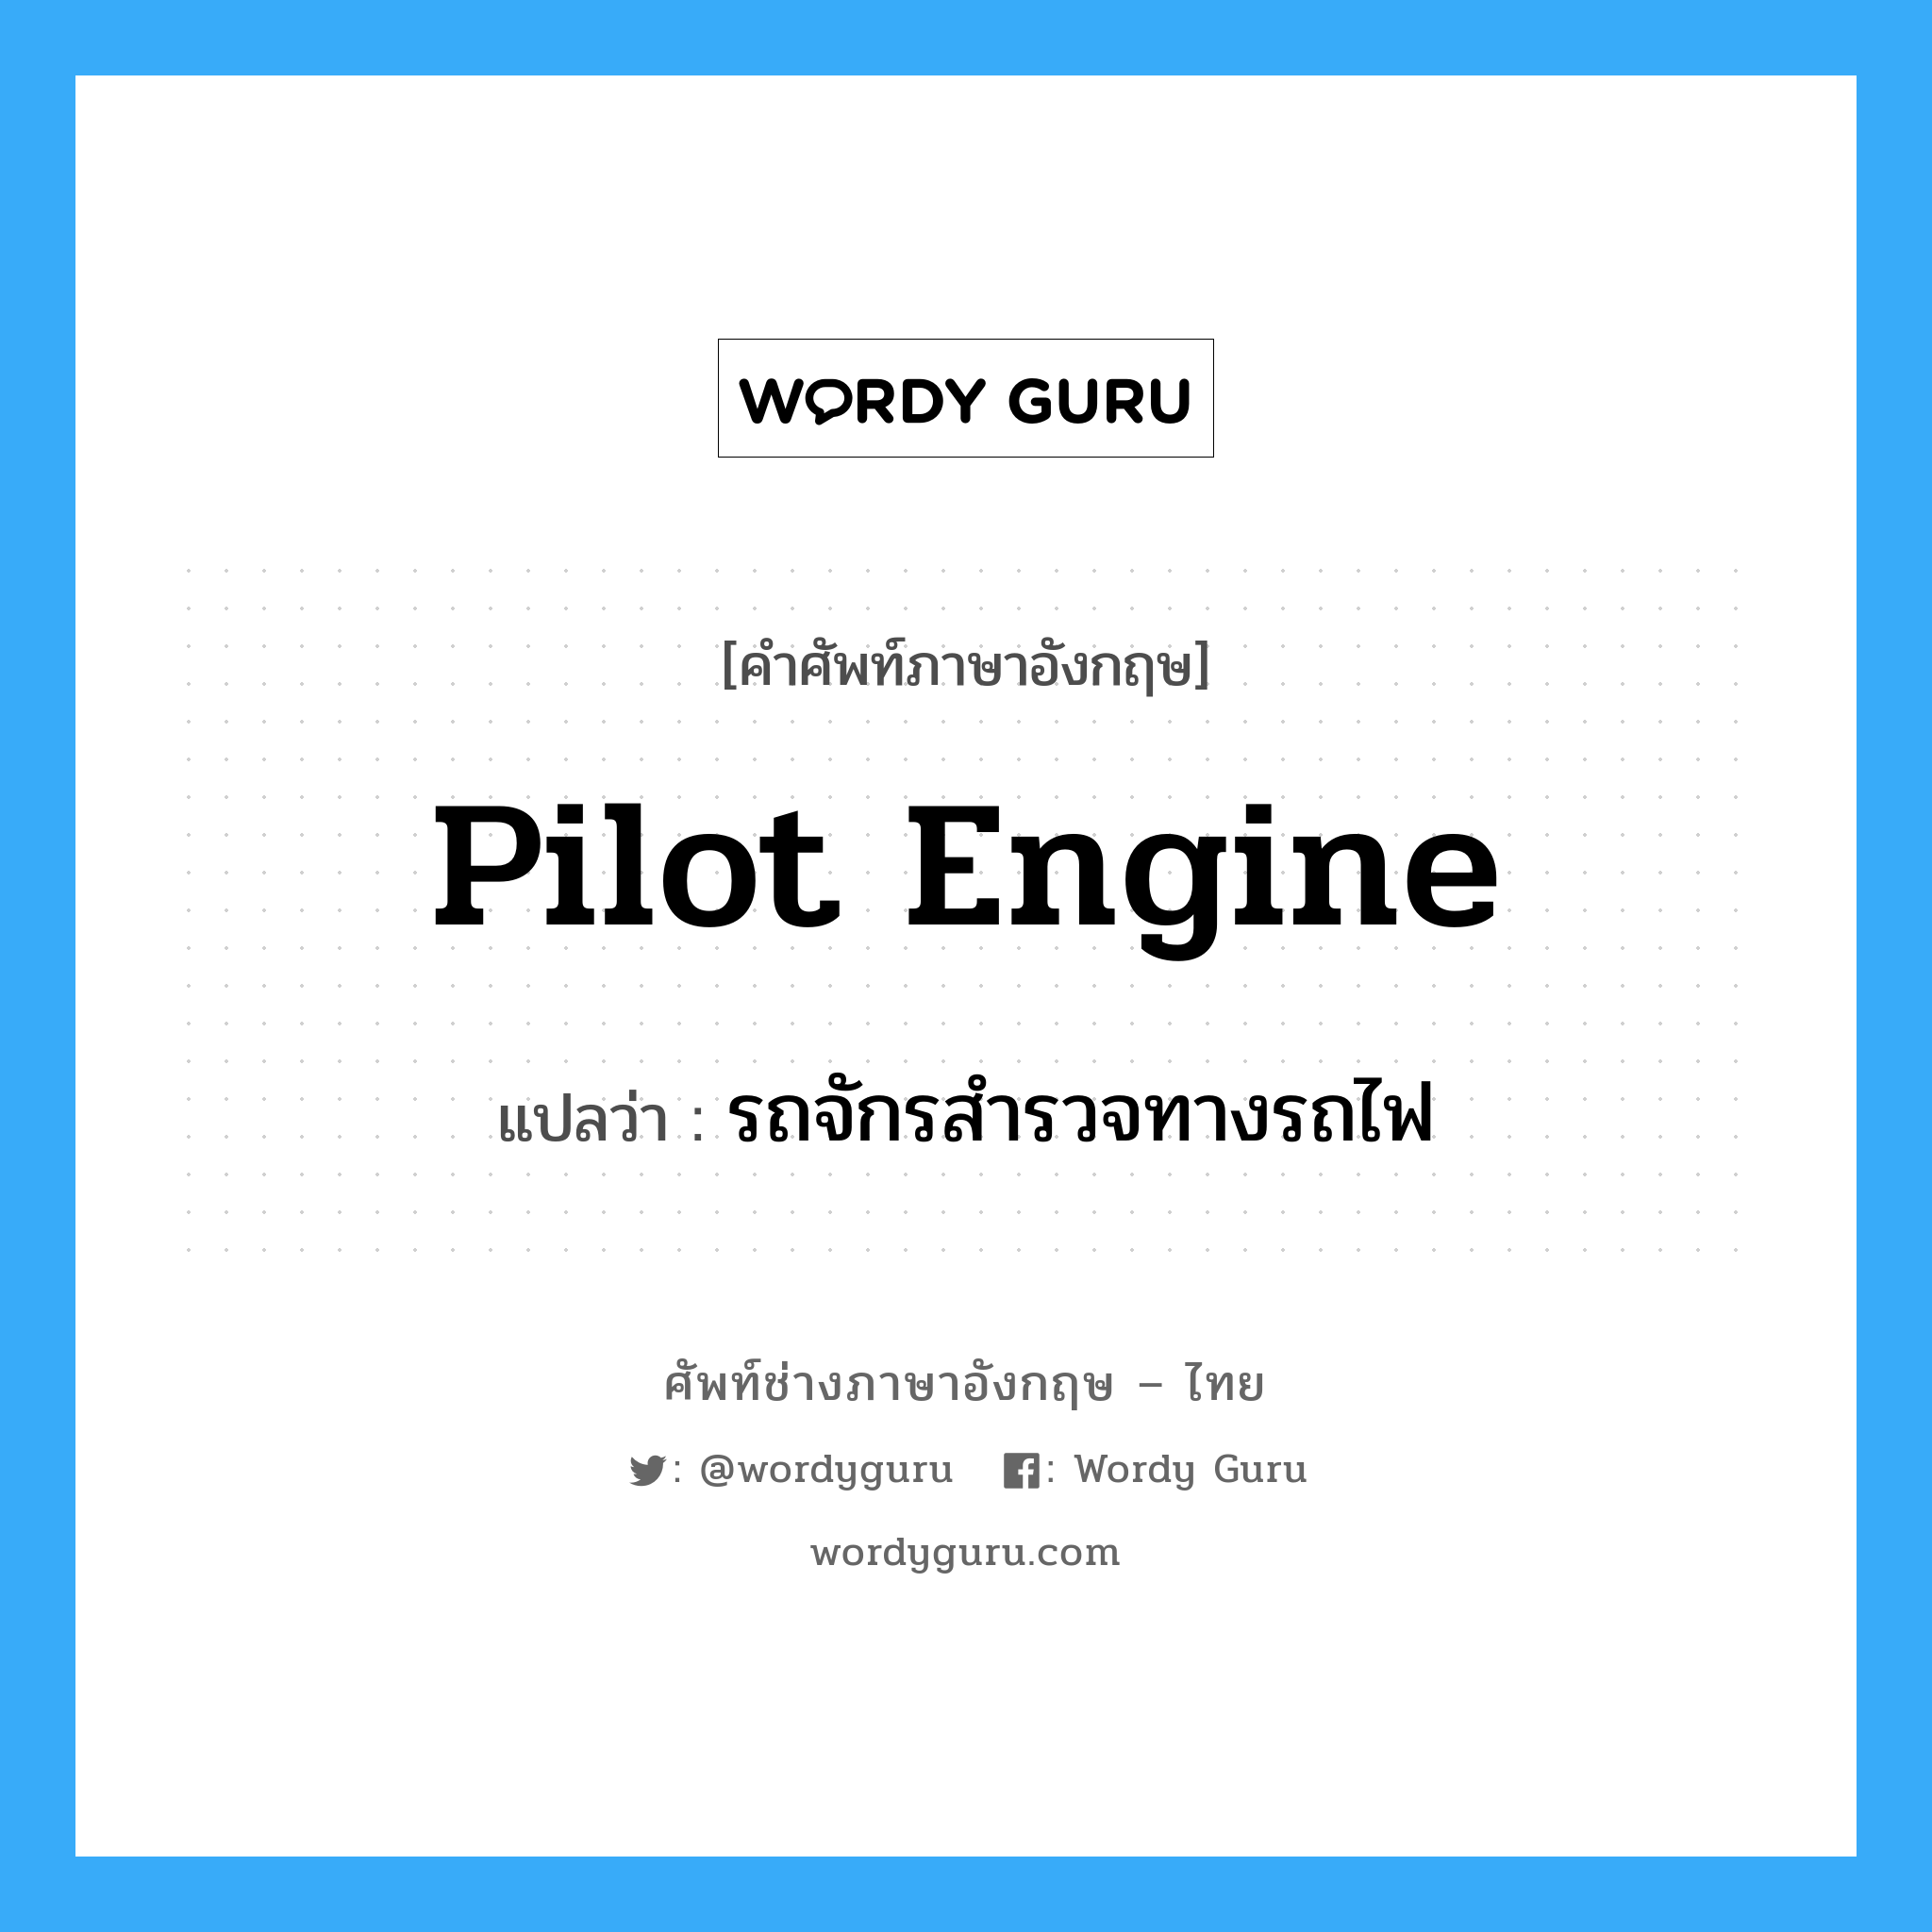 pilot engine แปลว่า?, คำศัพท์ช่างภาษาอังกฤษ - ไทย pilot engine คำศัพท์ภาษาอังกฤษ pilot engine แปลว่า รถจักรสำรวจทางรถไฟ